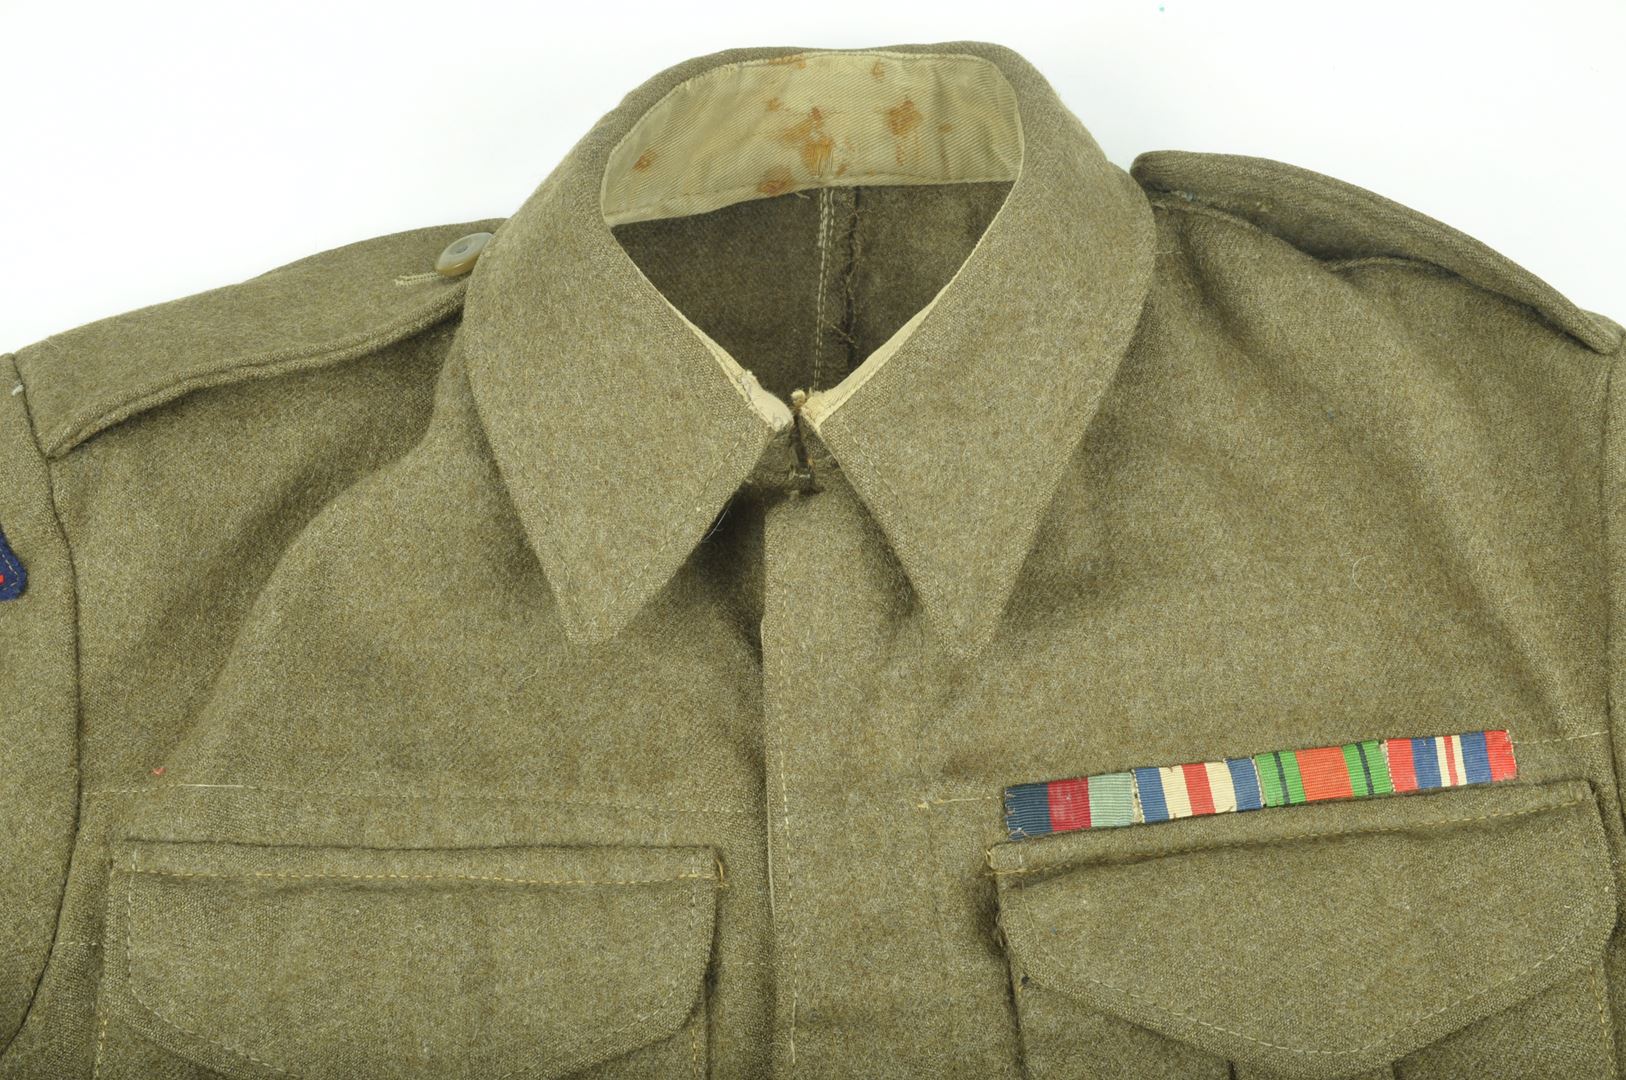 Blouson Battle Dress daté 1944 / Airborne Artillery